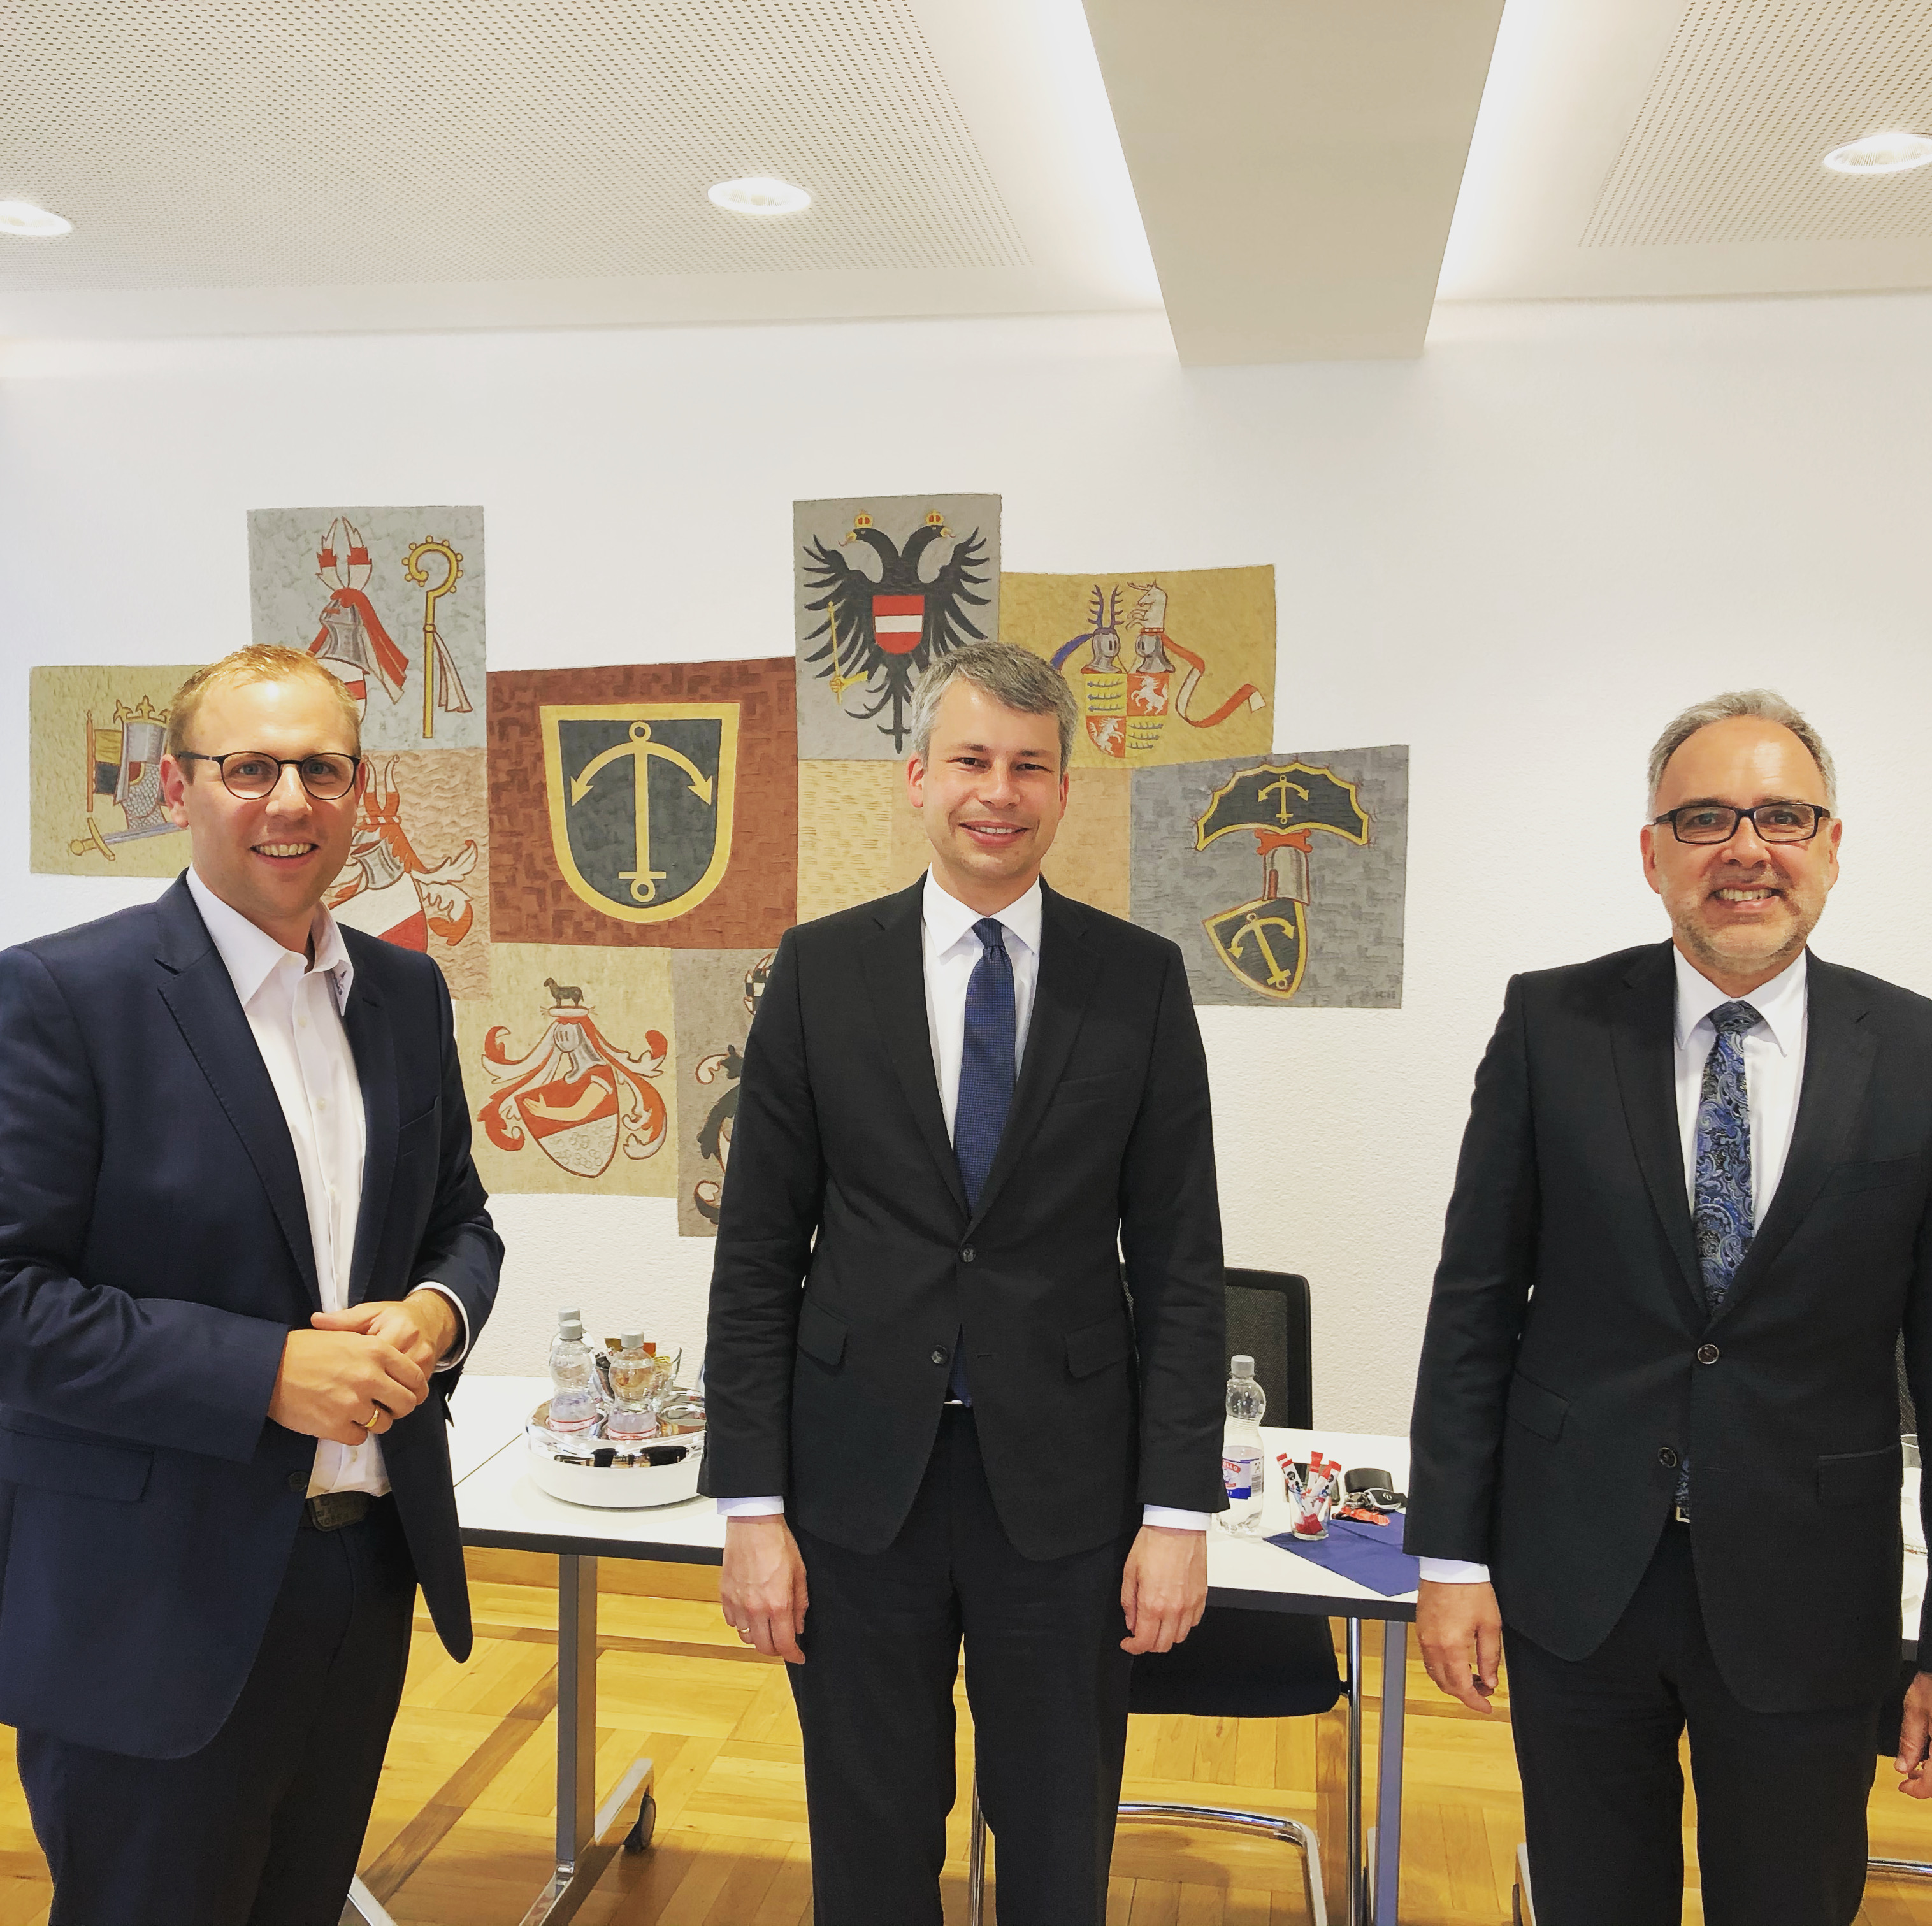  Bild (von links): Bürgermeister Ferdinand Truffner, Staatssekretär Steffen Bilger MdB und Landrat Dr. Klaus Michael Rückert 